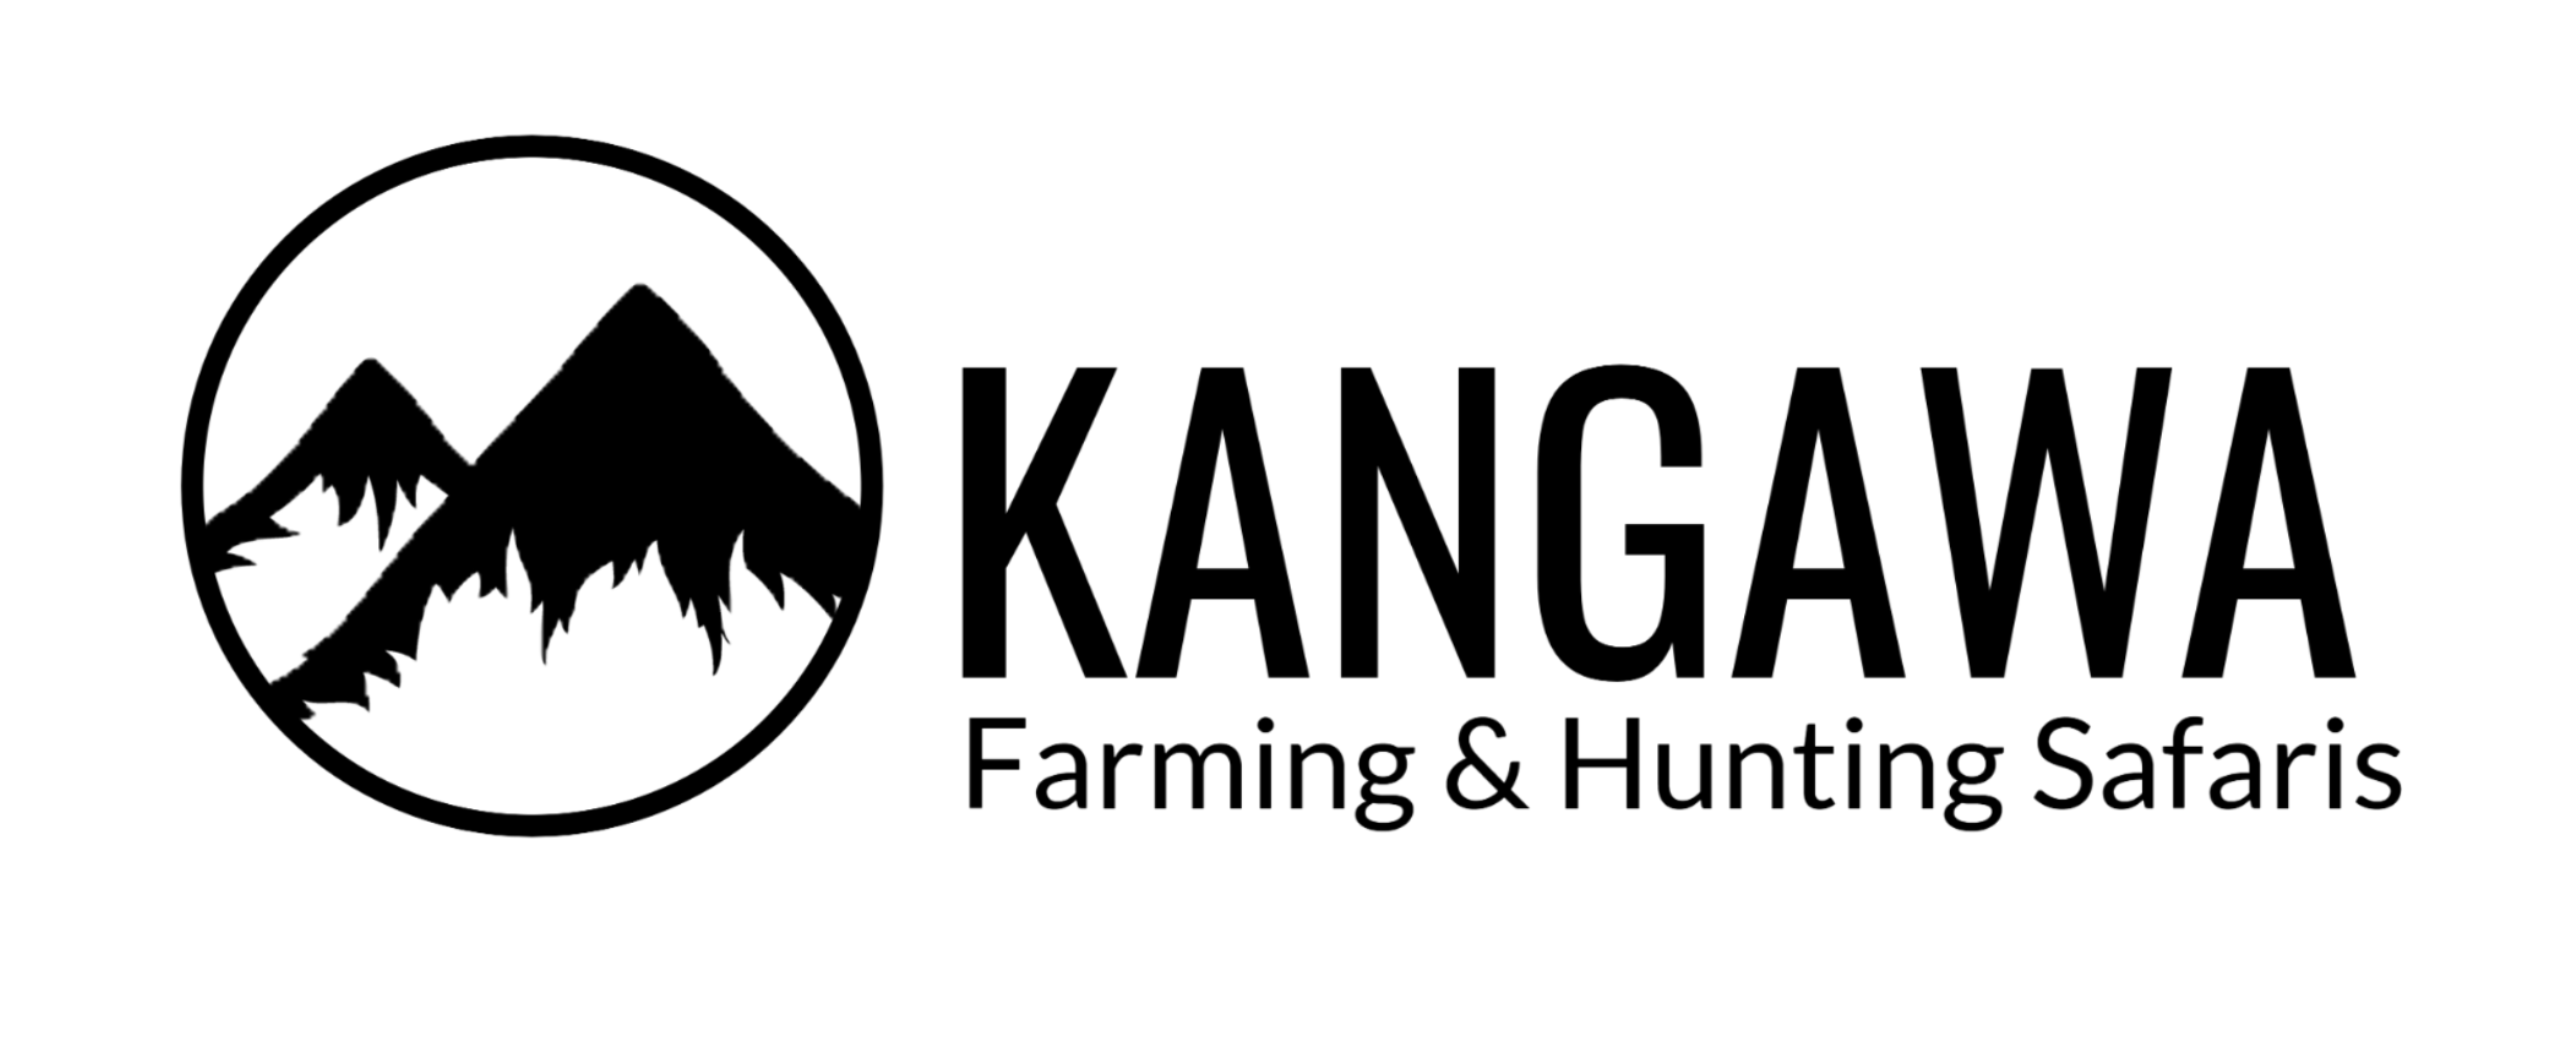 okangawa-farming-hunting-safaris